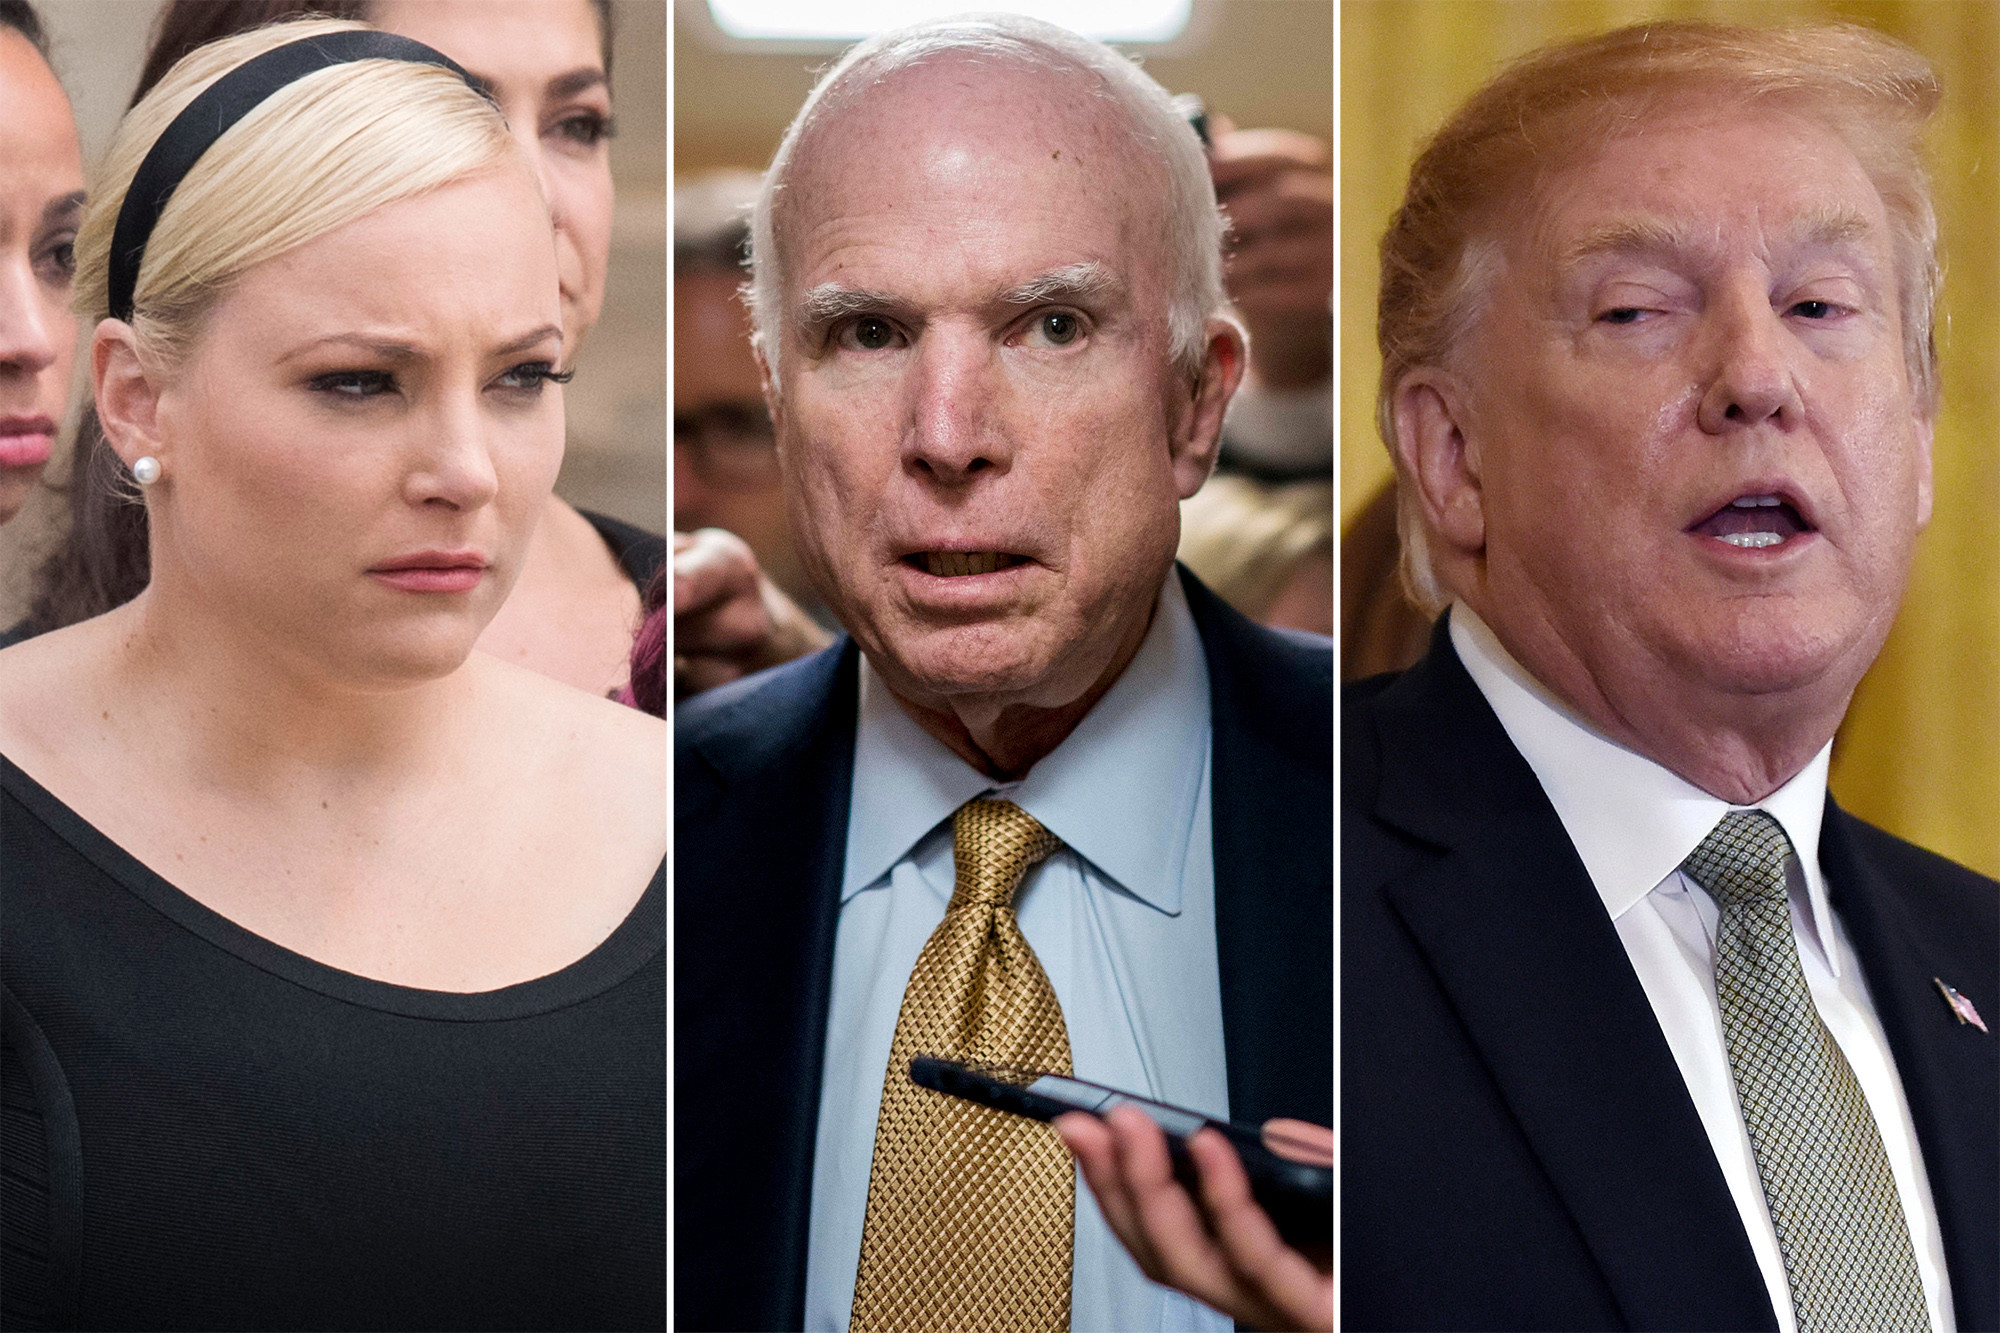 WATCH: Trump ‘I Was Never A Fan of John McCain’